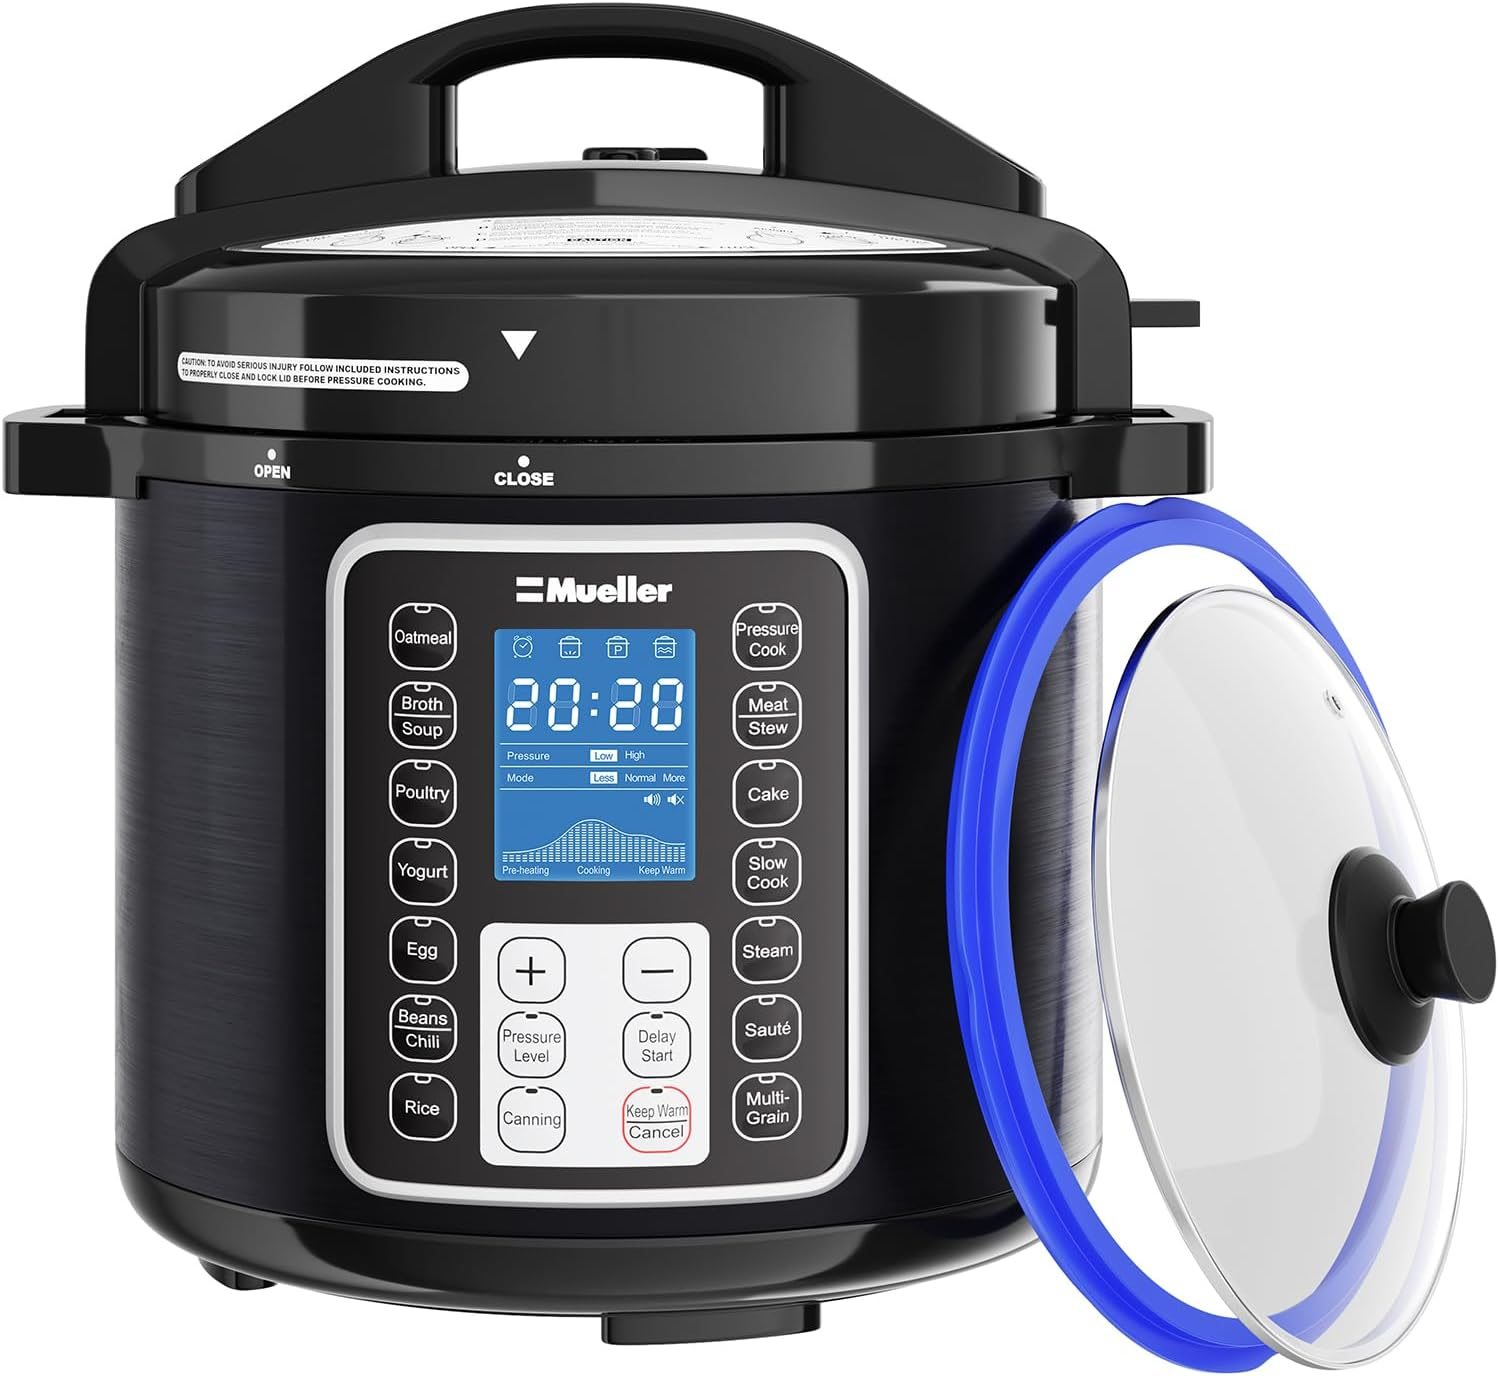 Ninja 6-Quart Instant Cooker / Pressure Cooker - appliances - by owner -  sale - craigslist